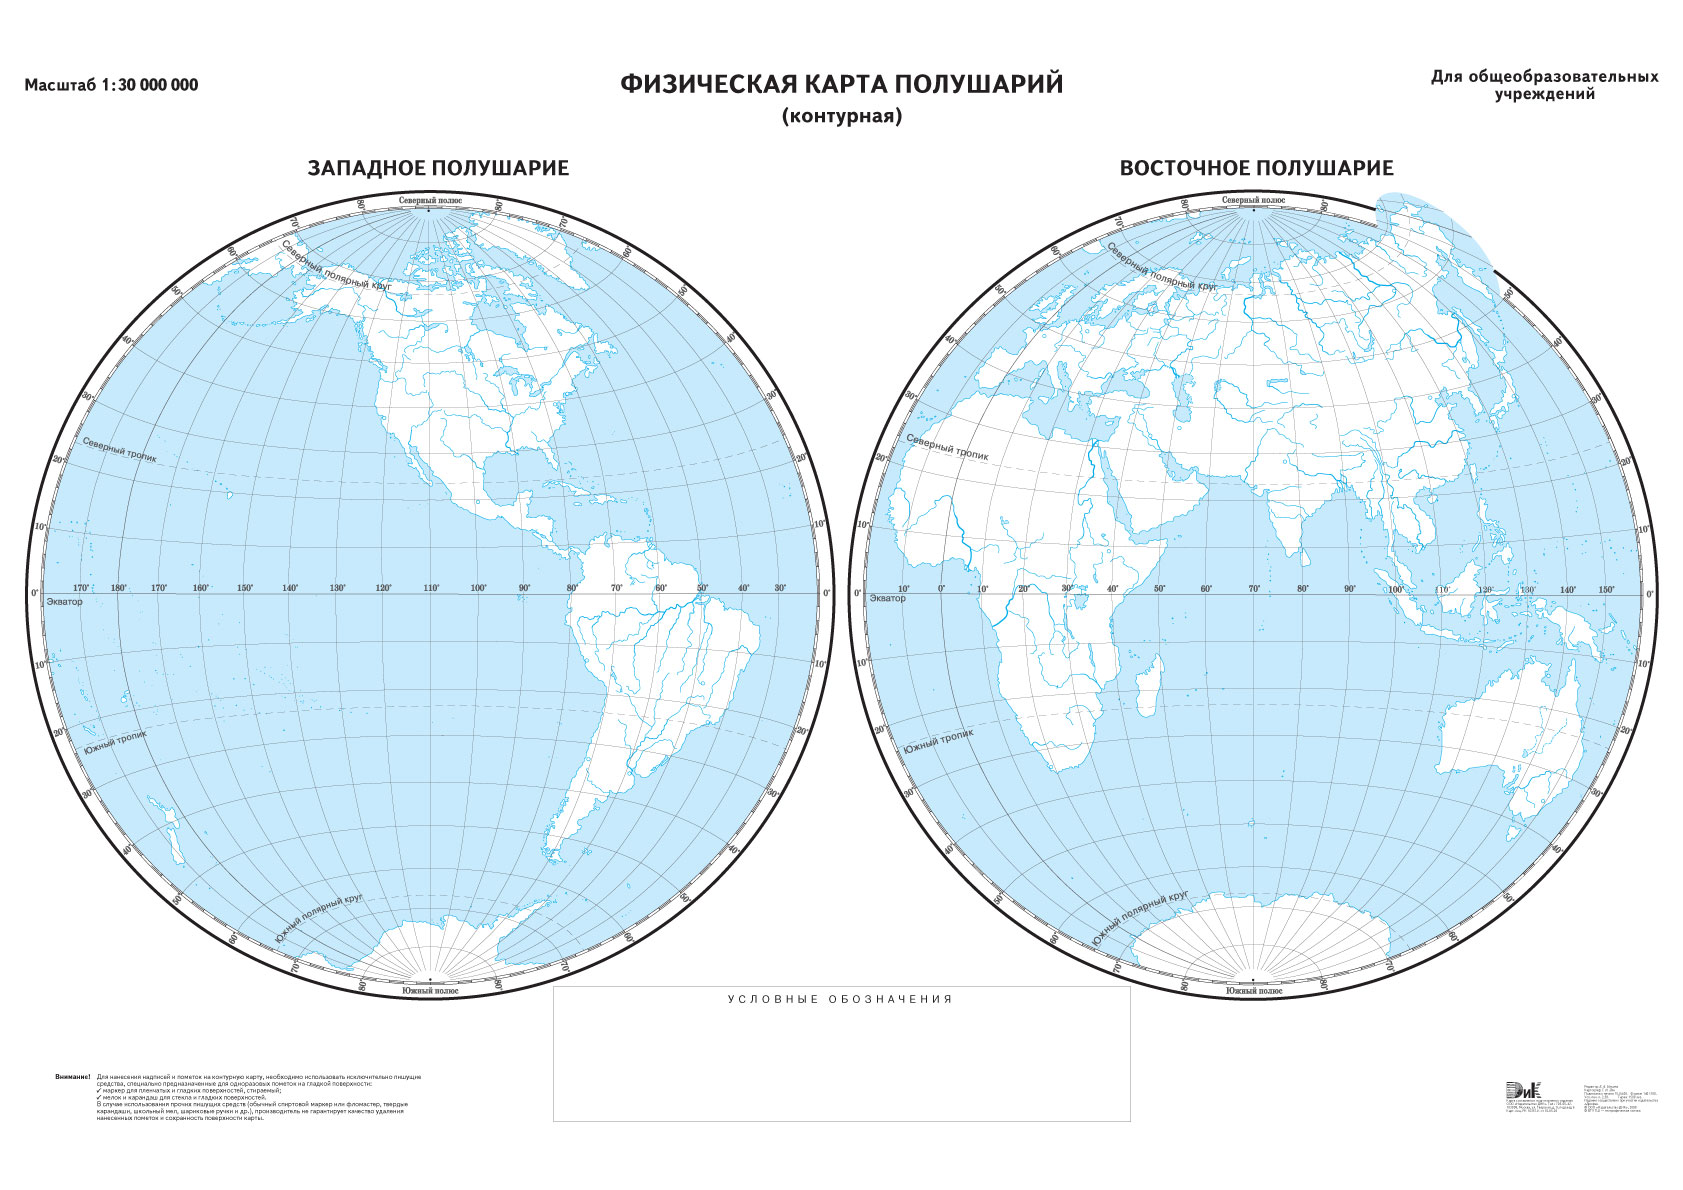 Описание контурной карты. Полушария земли контурная карта. Два полушария земли контурная карта. Физическая карта полушарий Восточное полушарие контурные карты. Контурная карта полушарий неподписанная.